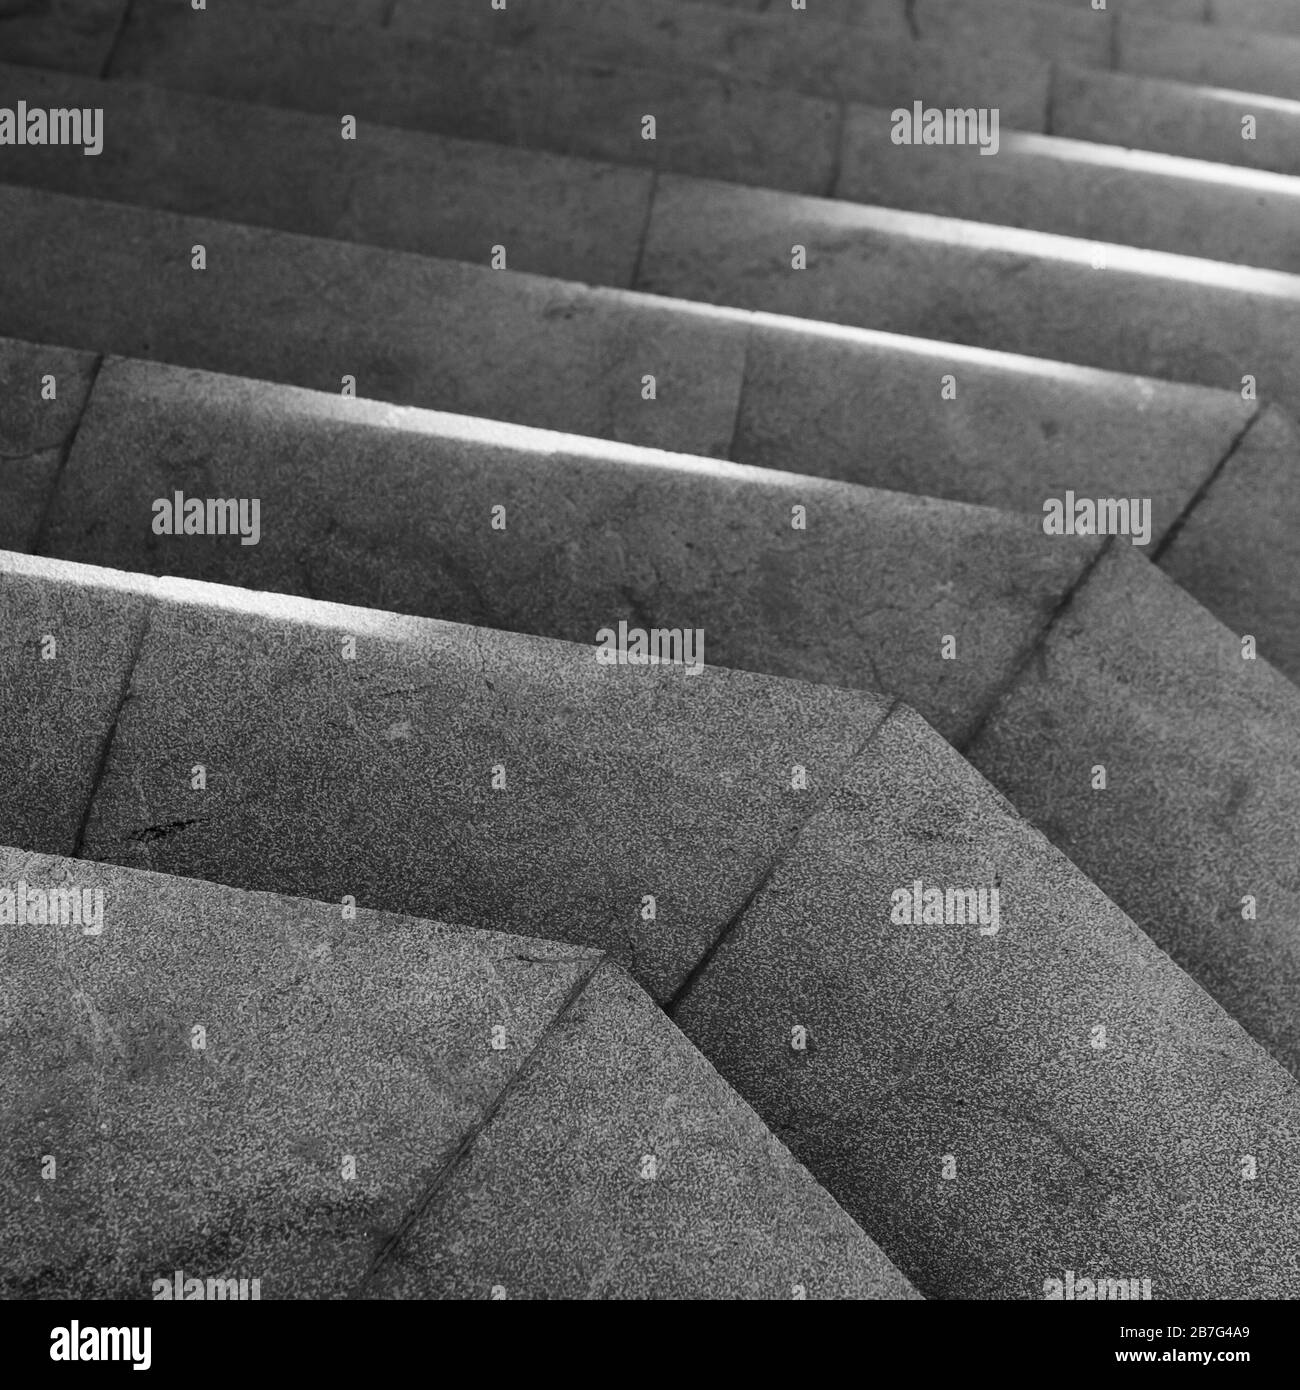 Scappate scale di pietra grigio scuro con luce del sole su di esso. Architettura astratta quadrato bianco e nero foto di sfondo Foto Stock